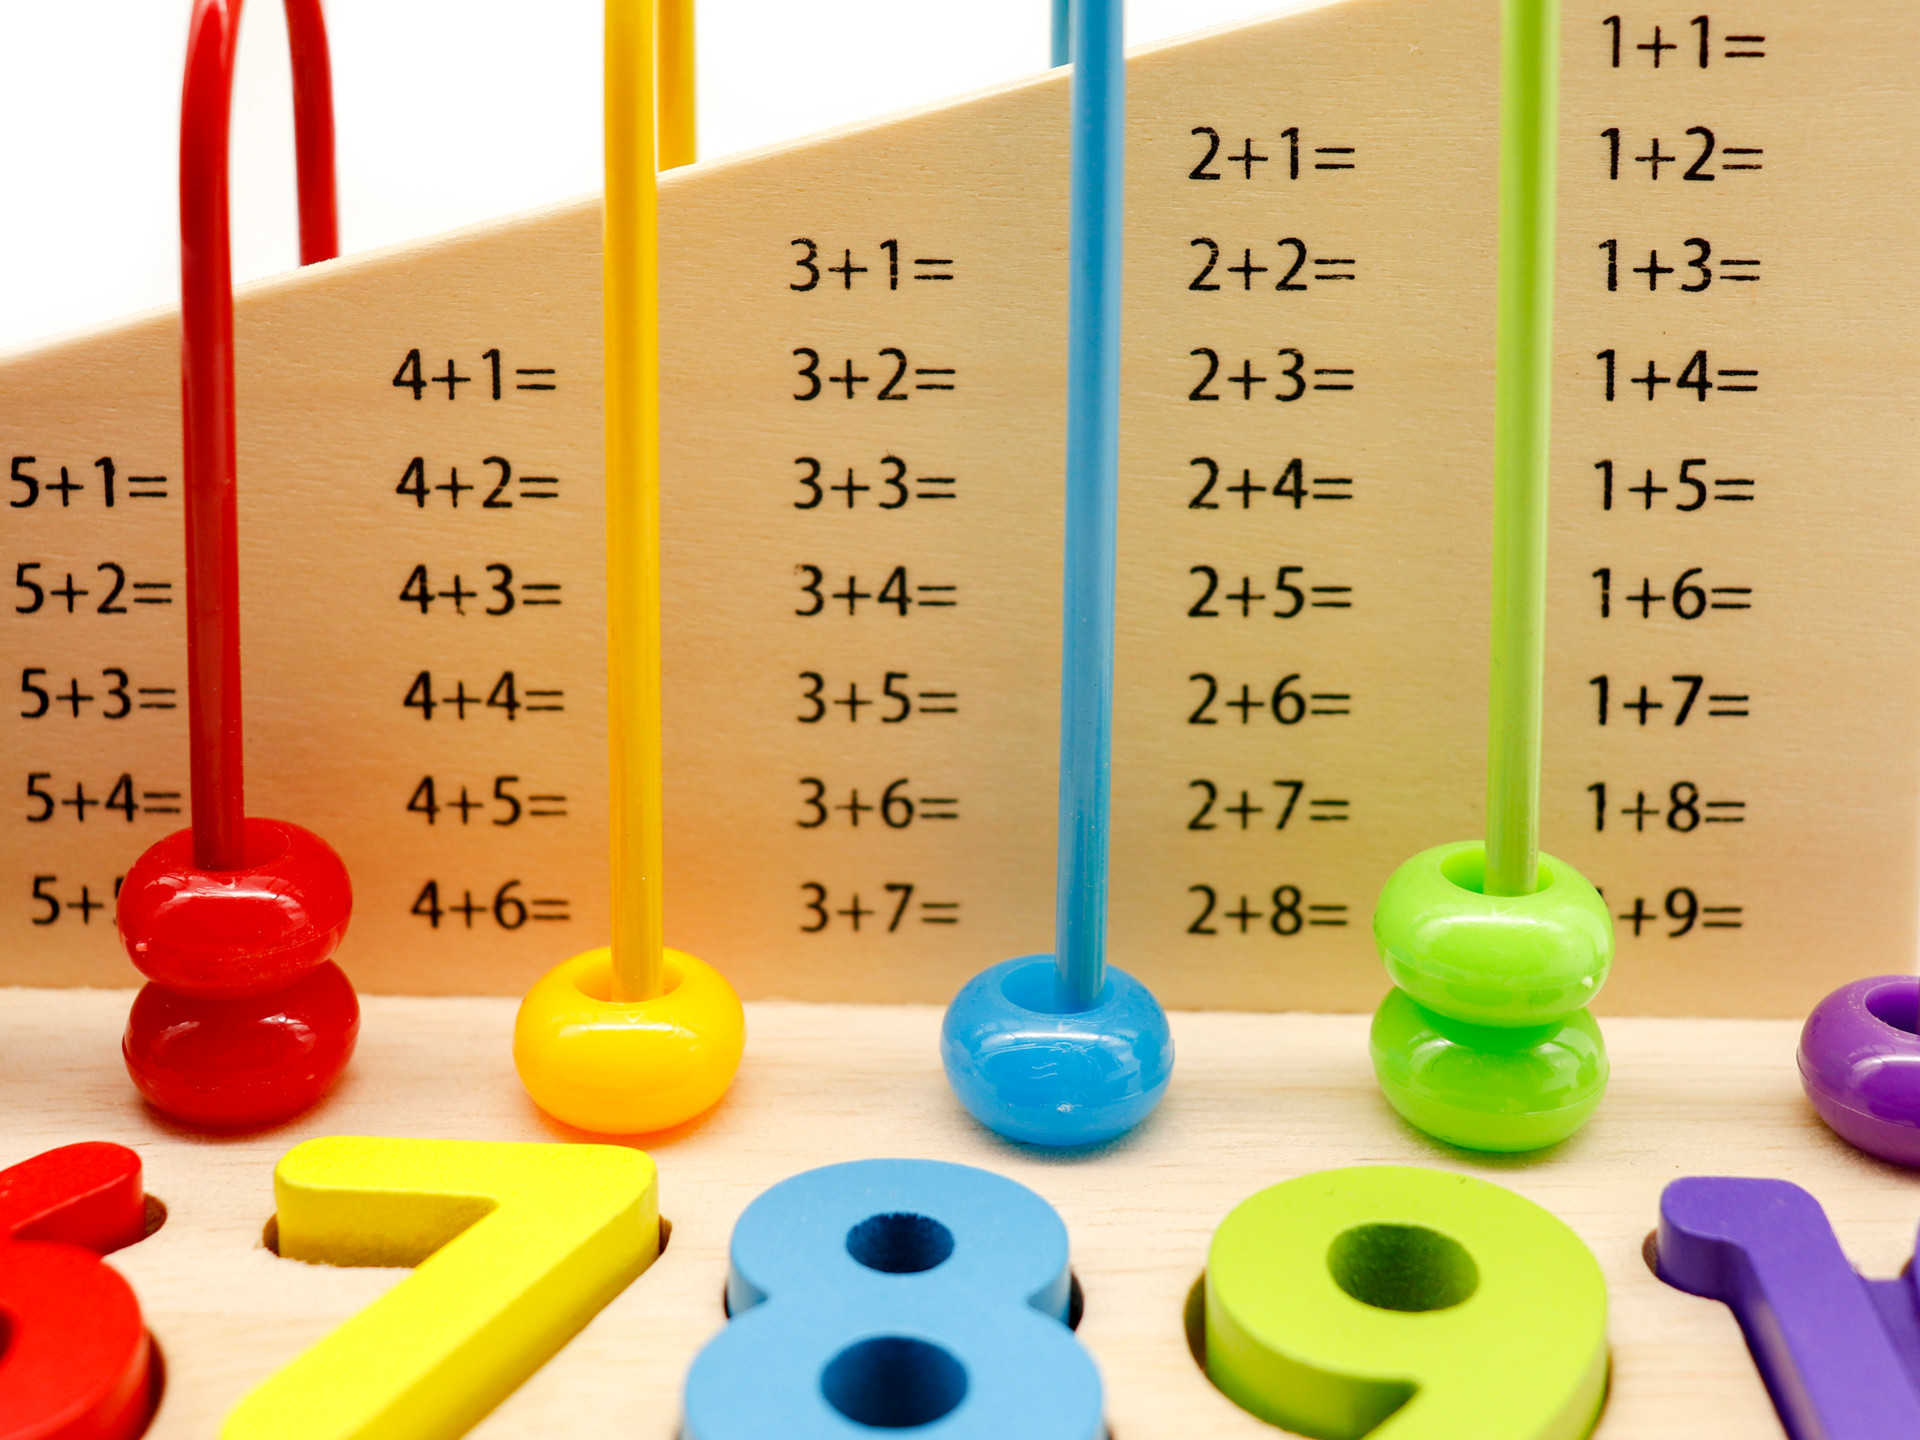 Jucarie educativa pentru copii, Abac cu Cifre si Forme Geometrice, Material Lemn, Varsta +3 ani, Smartic, multicolor [7]